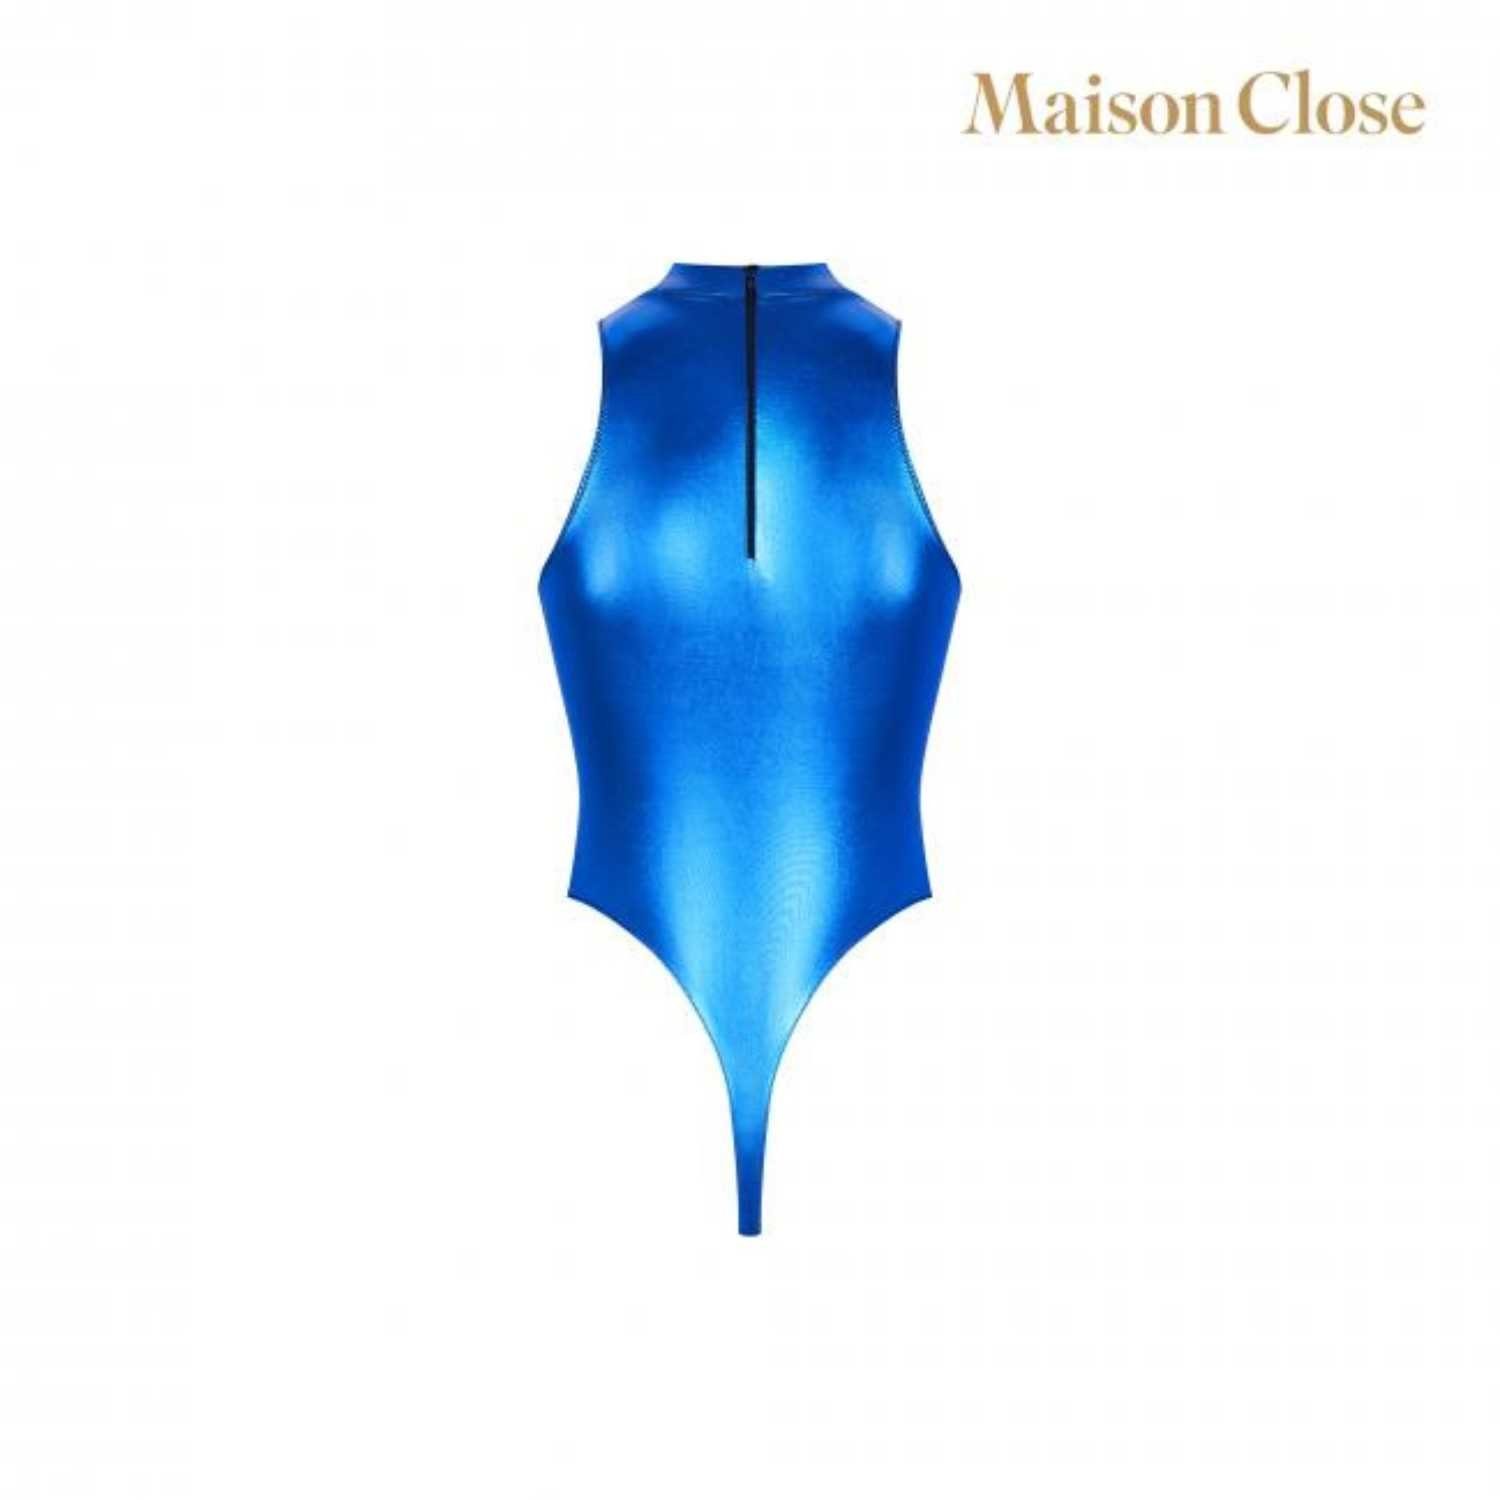 Maison Close Stringbody Maison Blue Body, String Angel Close